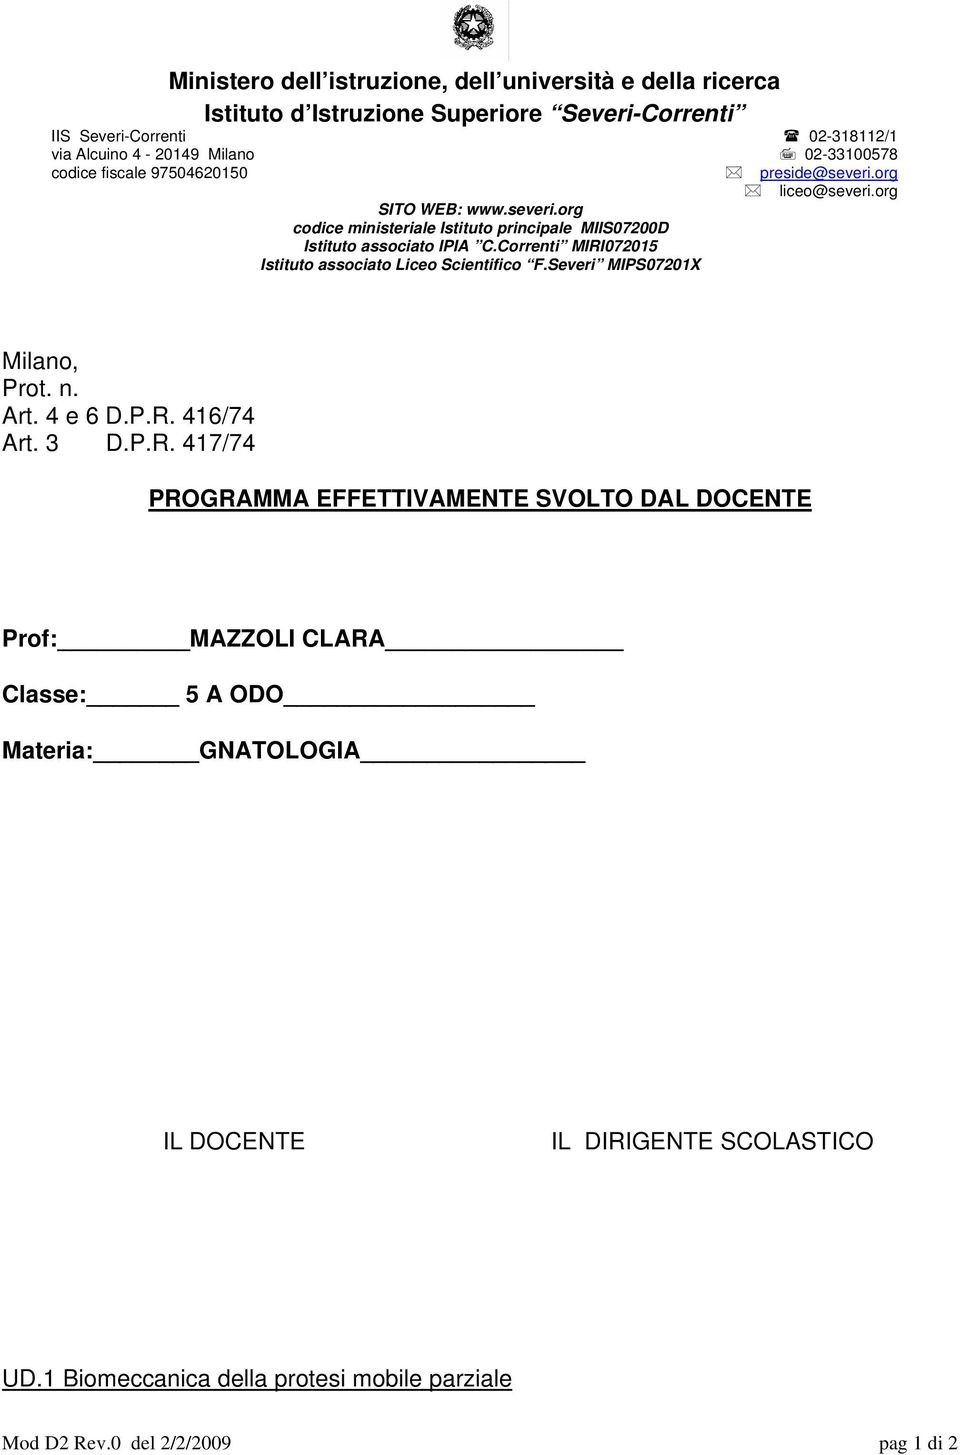 Correnti MIRI072015 Istituto associato Liceo Scientifico F.Severi MIPS07201X Milano, Prot. n. Art. 4 e 6 D.P.R. 416/74 Art. 3 D.P.R. 417/74 PROGRAMMA EFFETTIVAMENTE SVOLTO DAL DOCENTE Prof: MAZZOLI CLARA Classe: 5 A ODO Materia: GNATOLOGIA IL DOCENTE IL DIRIGENTE SCOLASTICO UD.